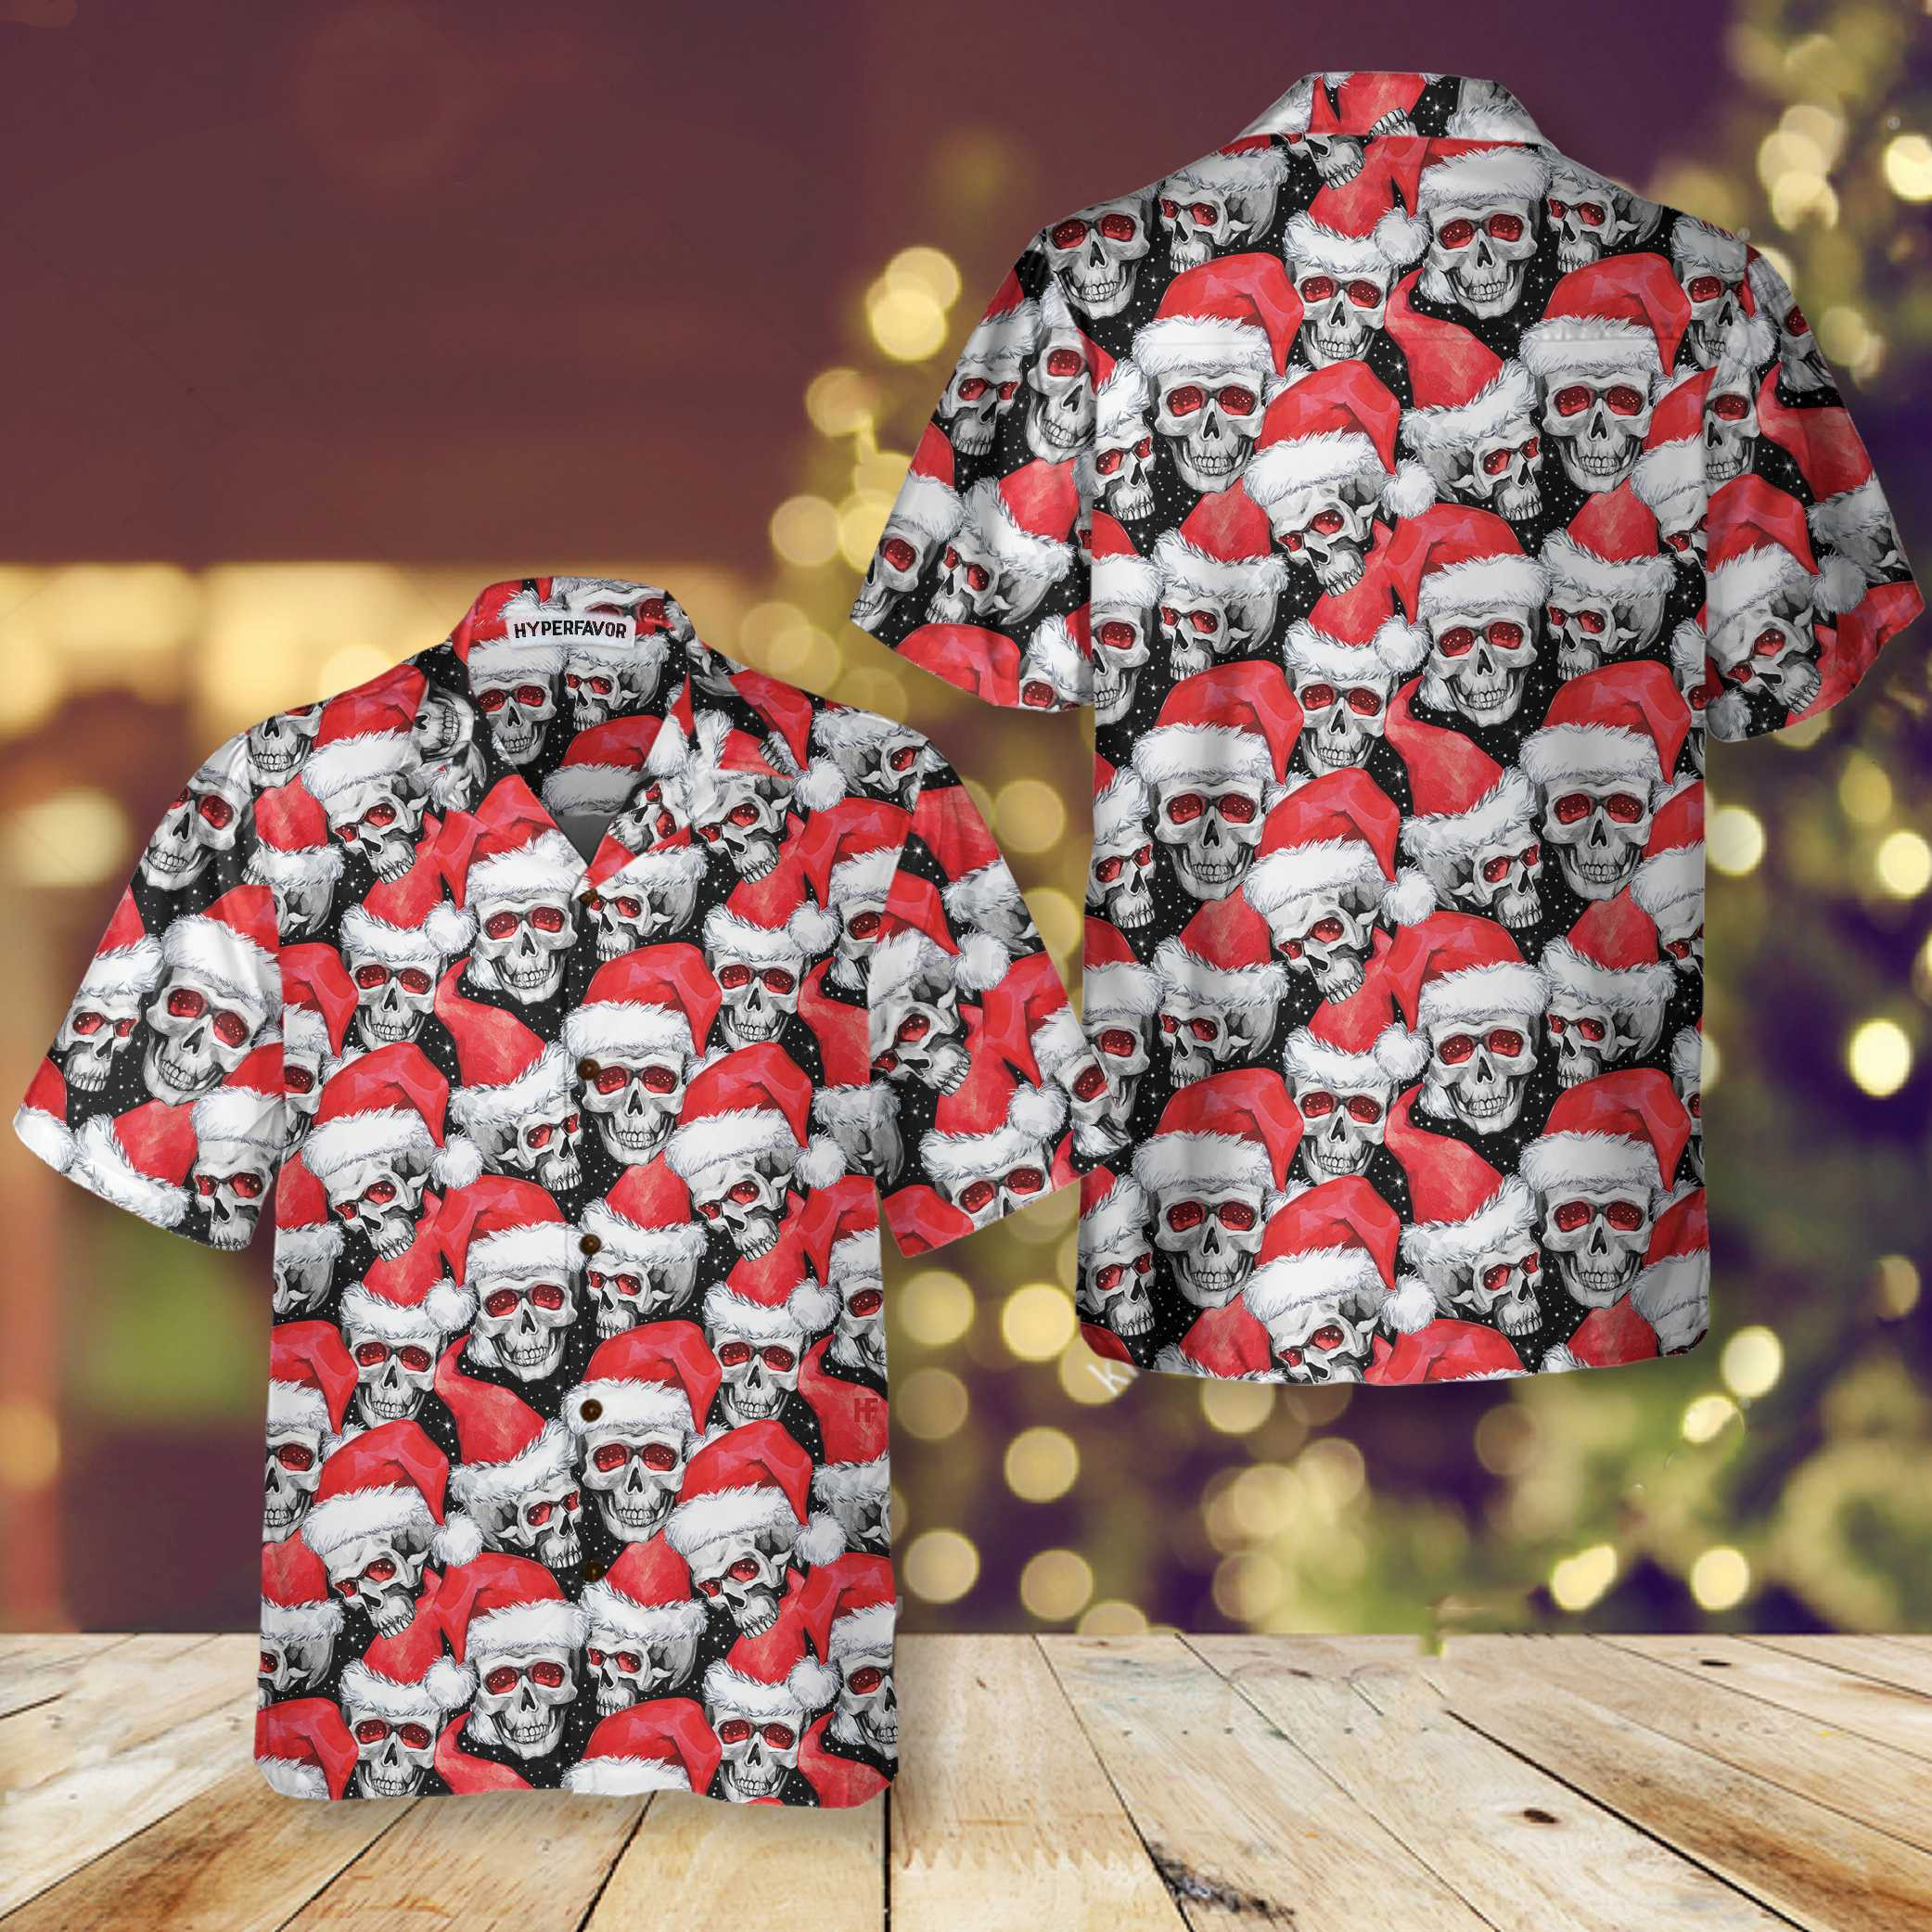 Fashionable Christmas Skulls Hawaiian Shirt, Cool Christmas Hawaiian Shirt